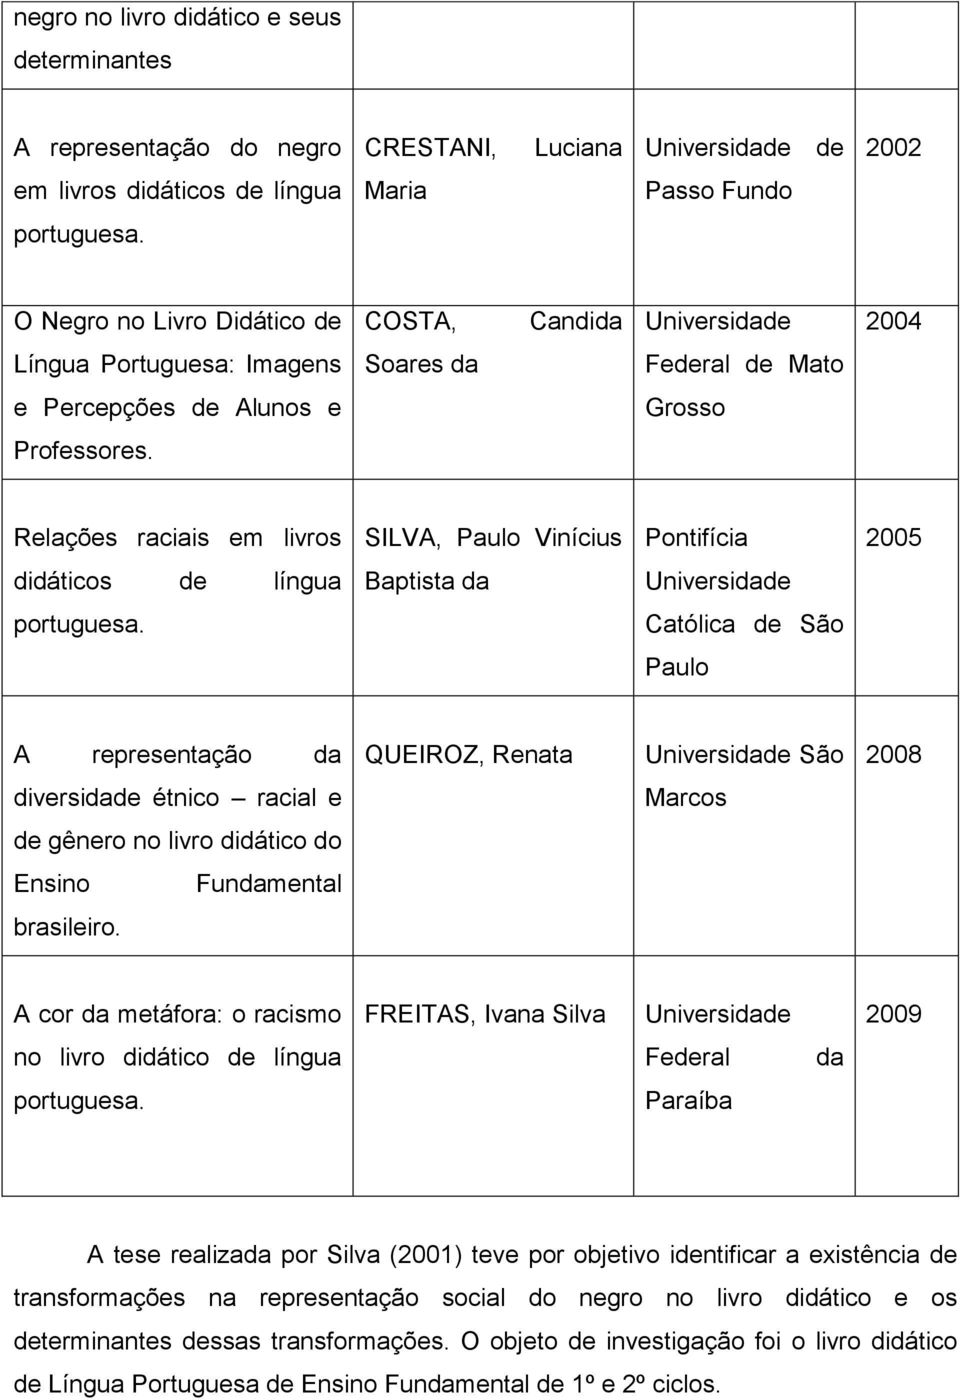 Relações raciais em livros SILVA, Paulo Vinícius Pontifícia 2005 didáticos de língua Baptista da Universidade portuguesa.